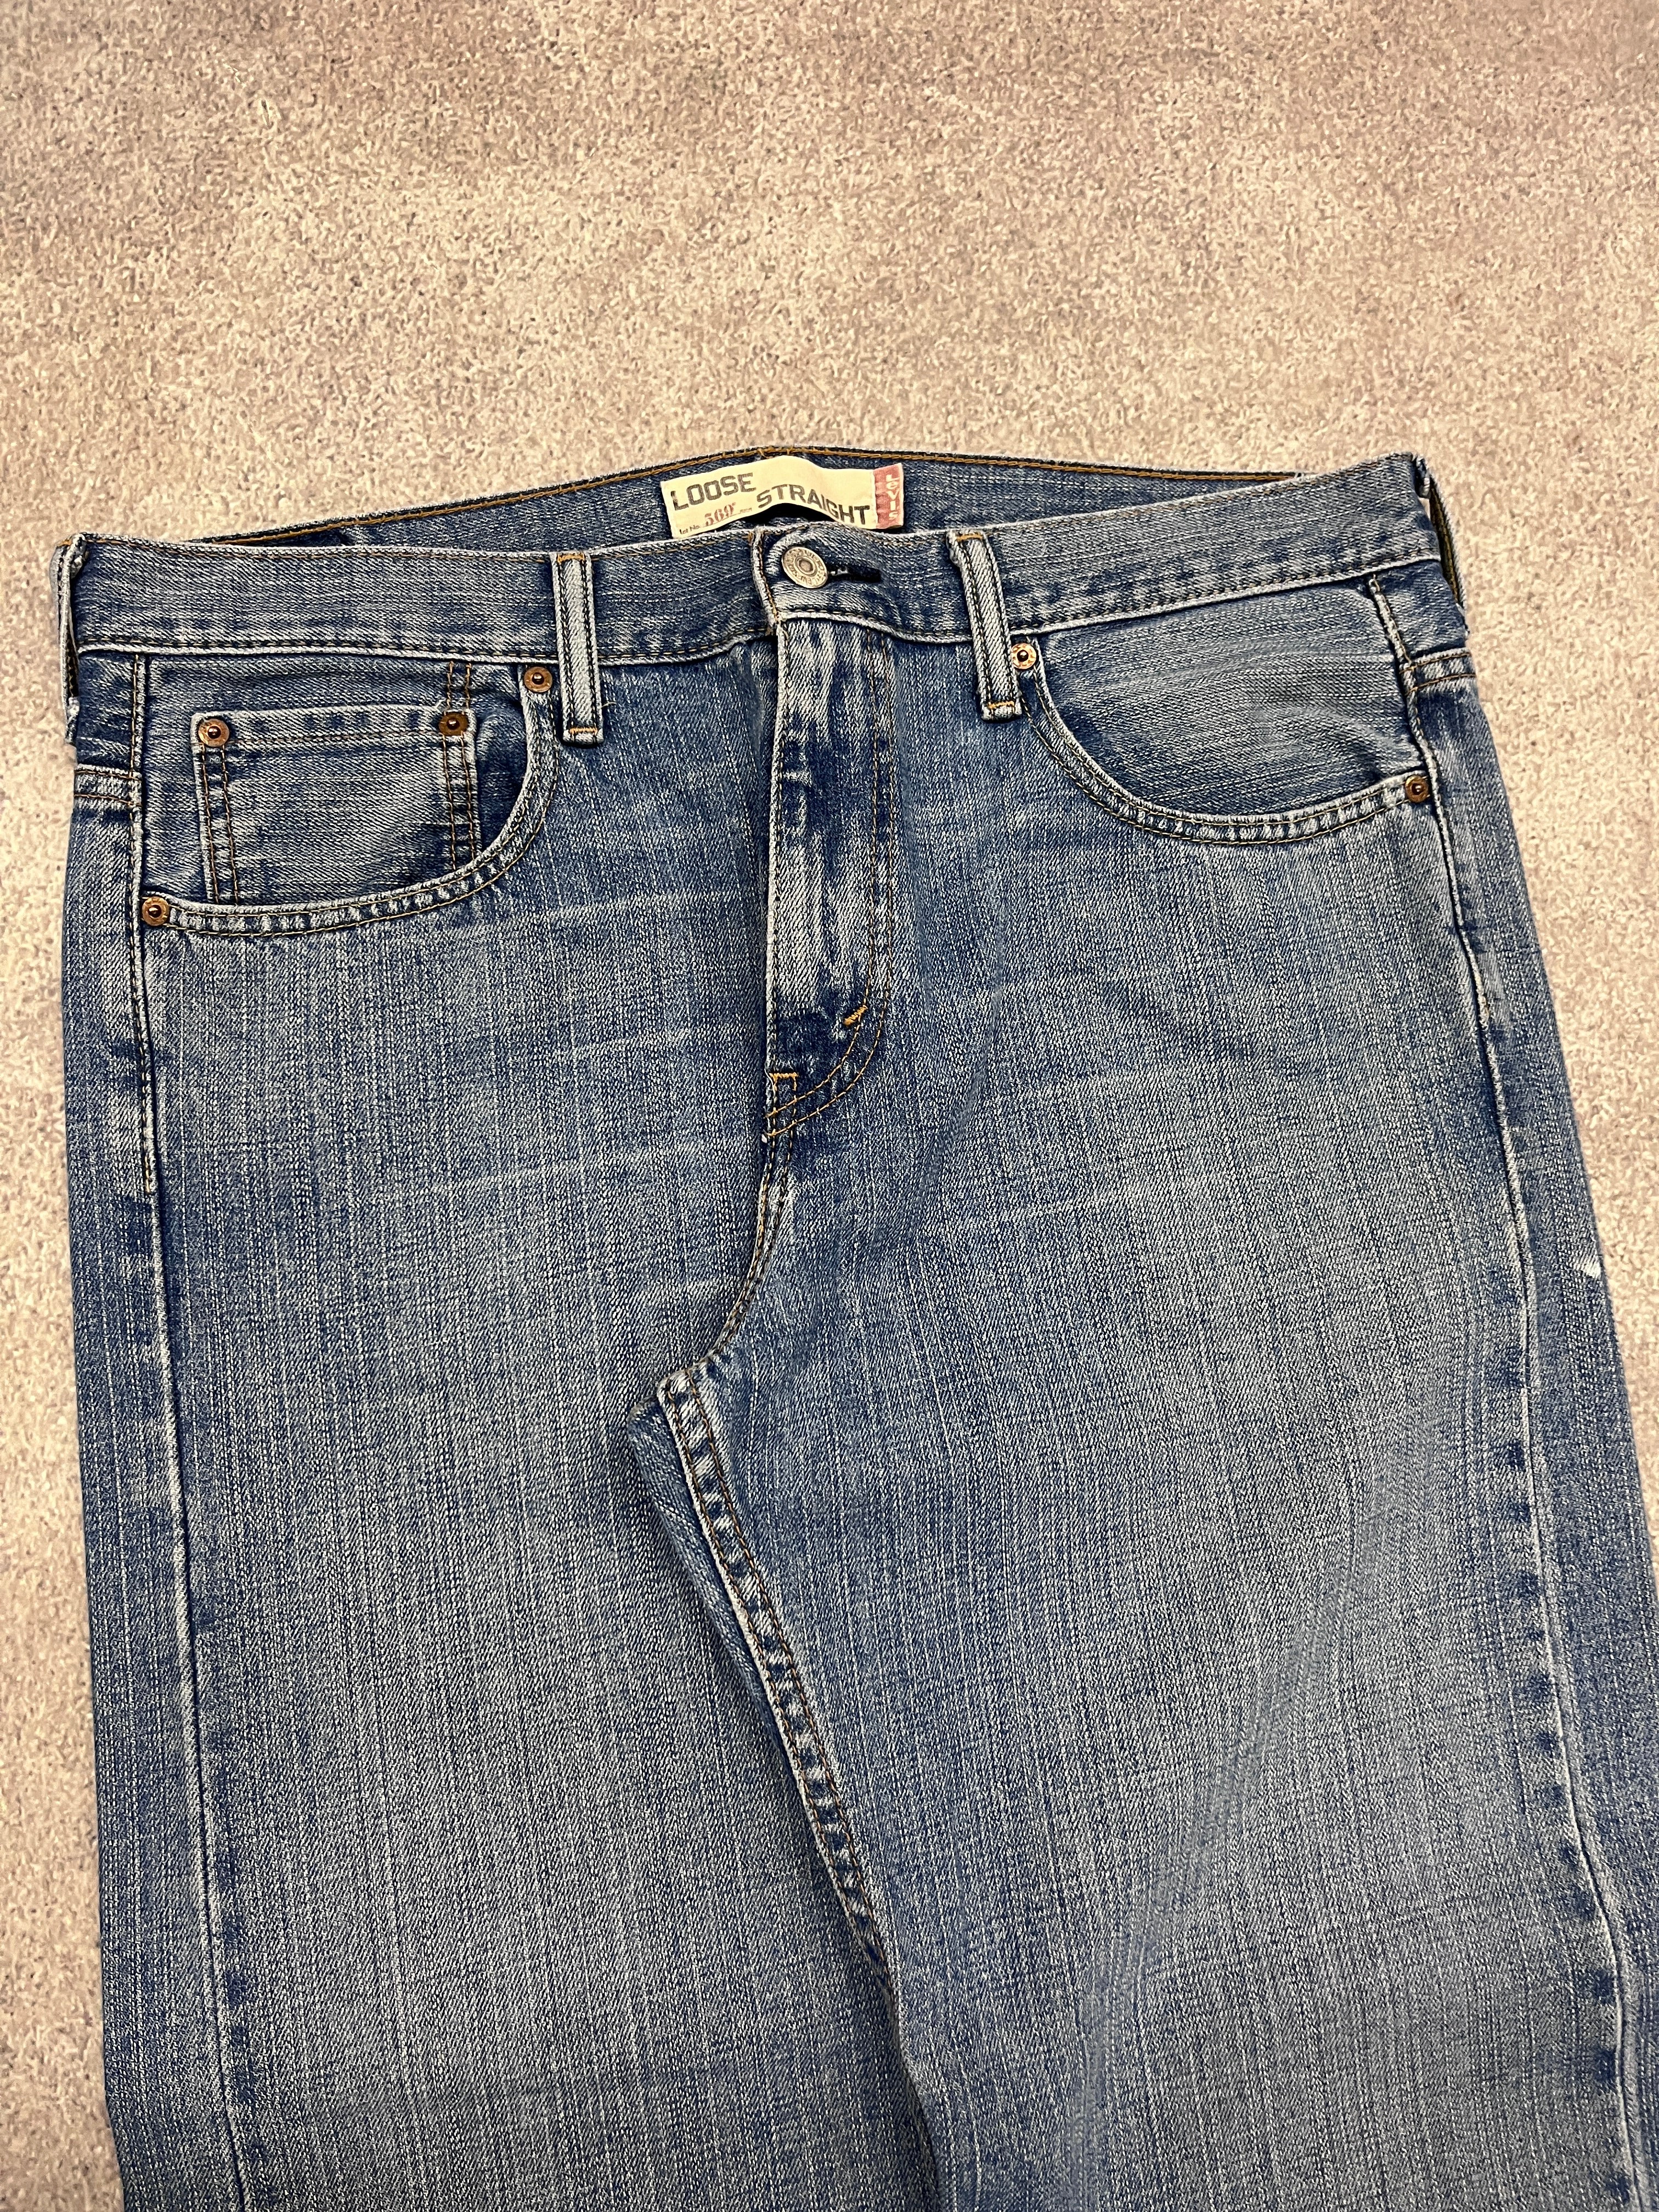 Vintage Levi 569 Denim Jeans Blue // W33 L32 - RHAGHOUSE VINTAGE